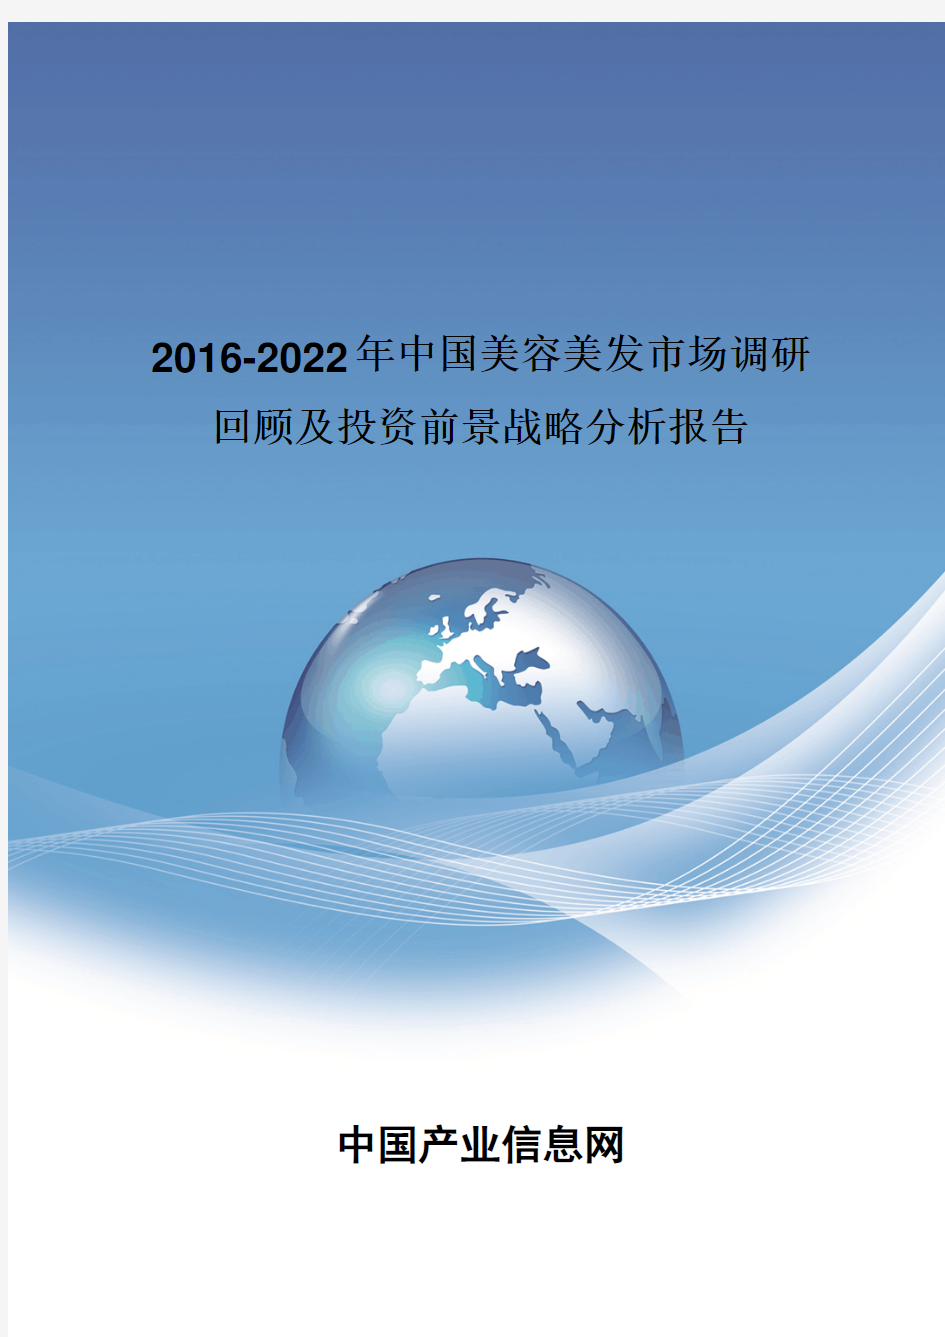 2016-2022年中国美容美发市场调研回顾报告